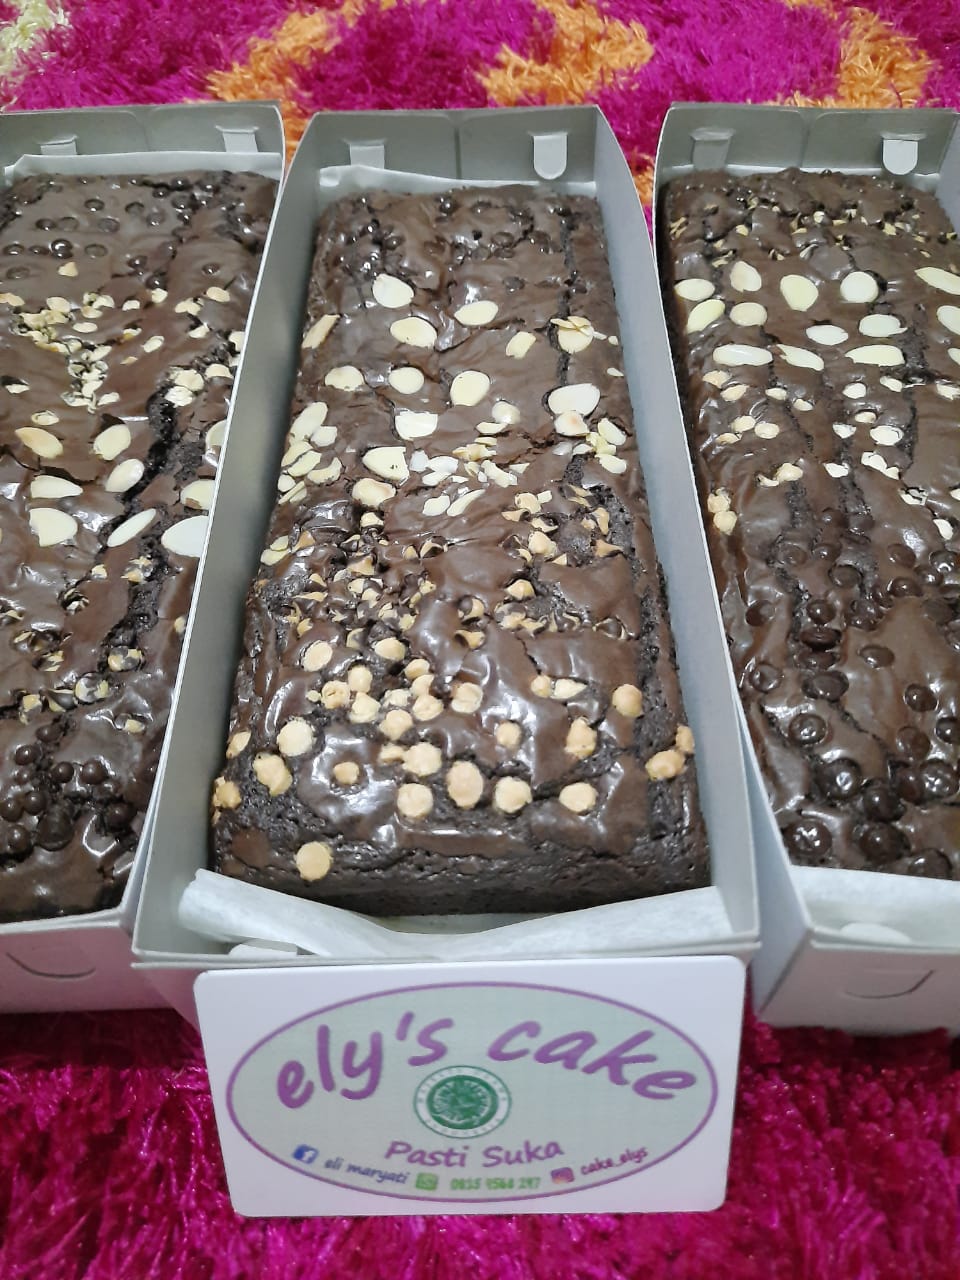 Cake Brownies  Shiny Coklat  Rp. 56,000,- / Pc (Min. Order 3 Pc)